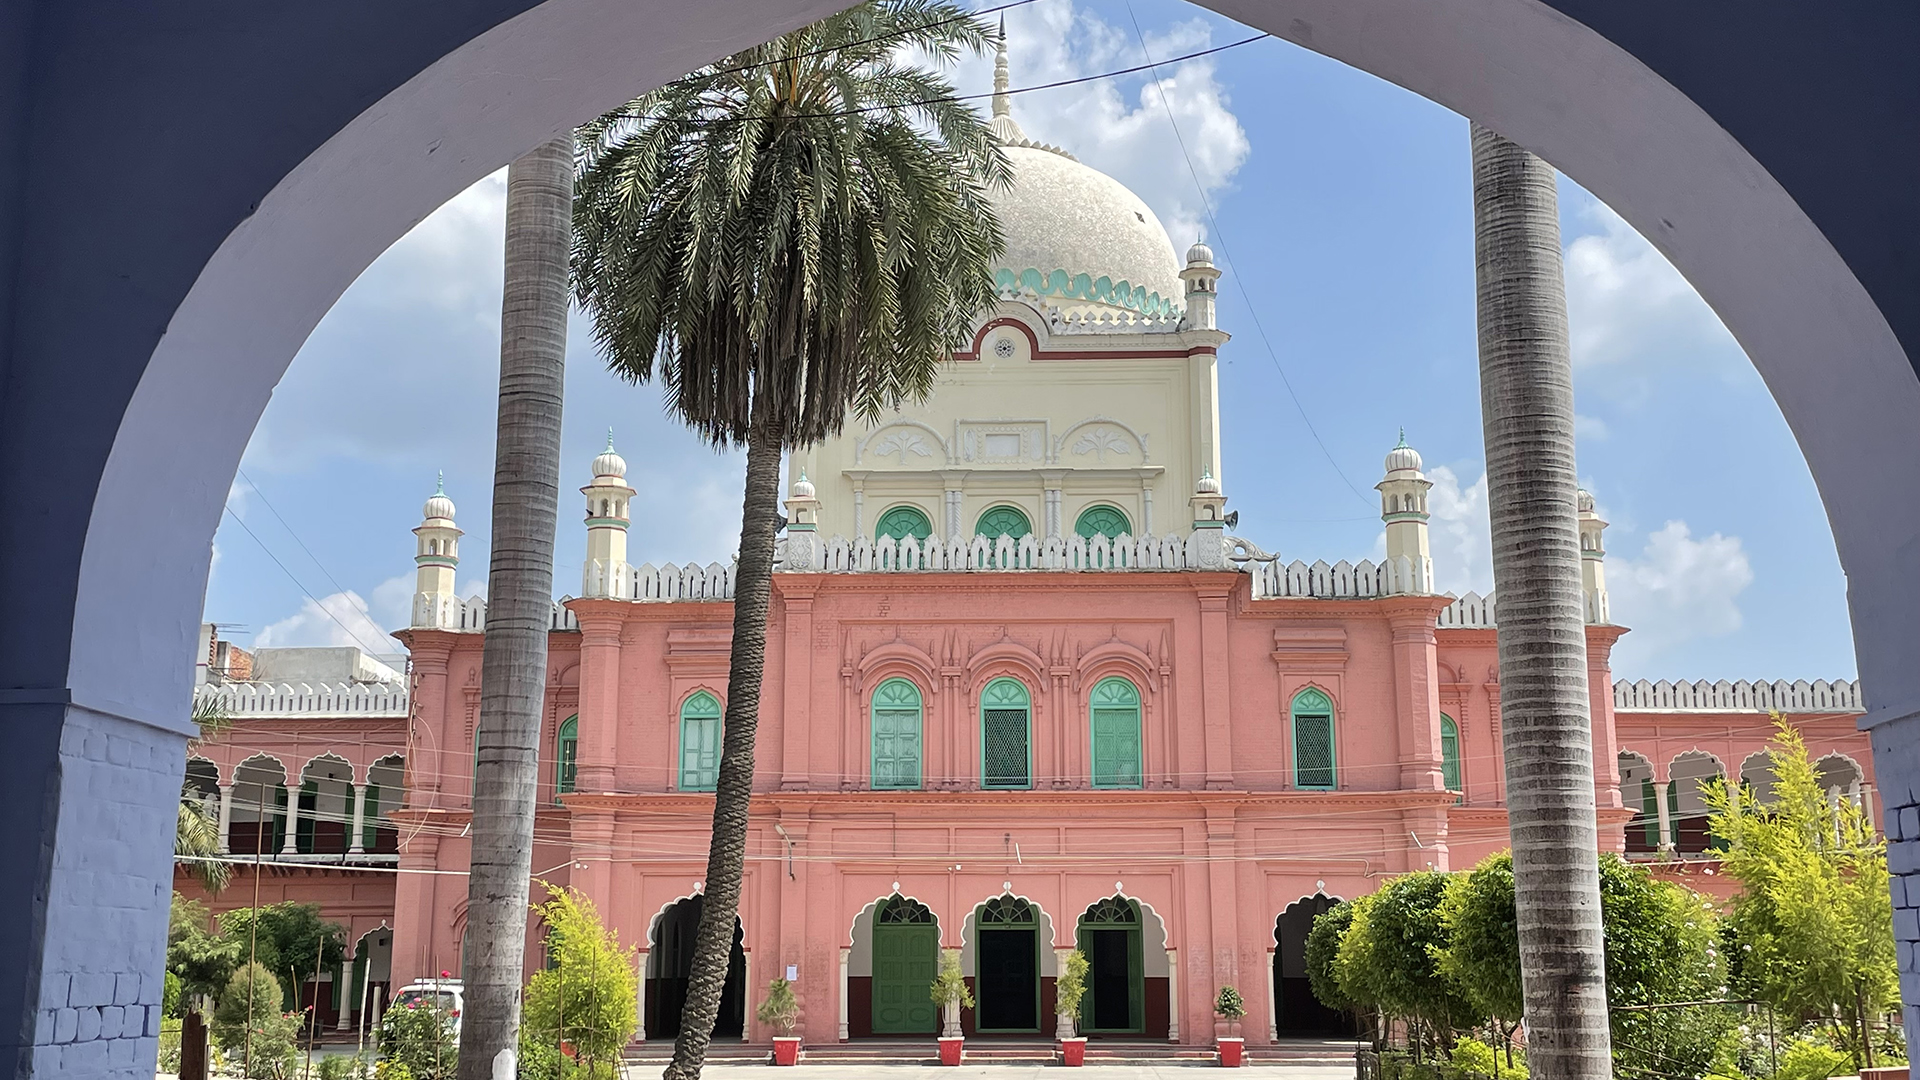 Das Hauptgebäude der großen Moschee in Deoband (Indien) | Peter Hornung